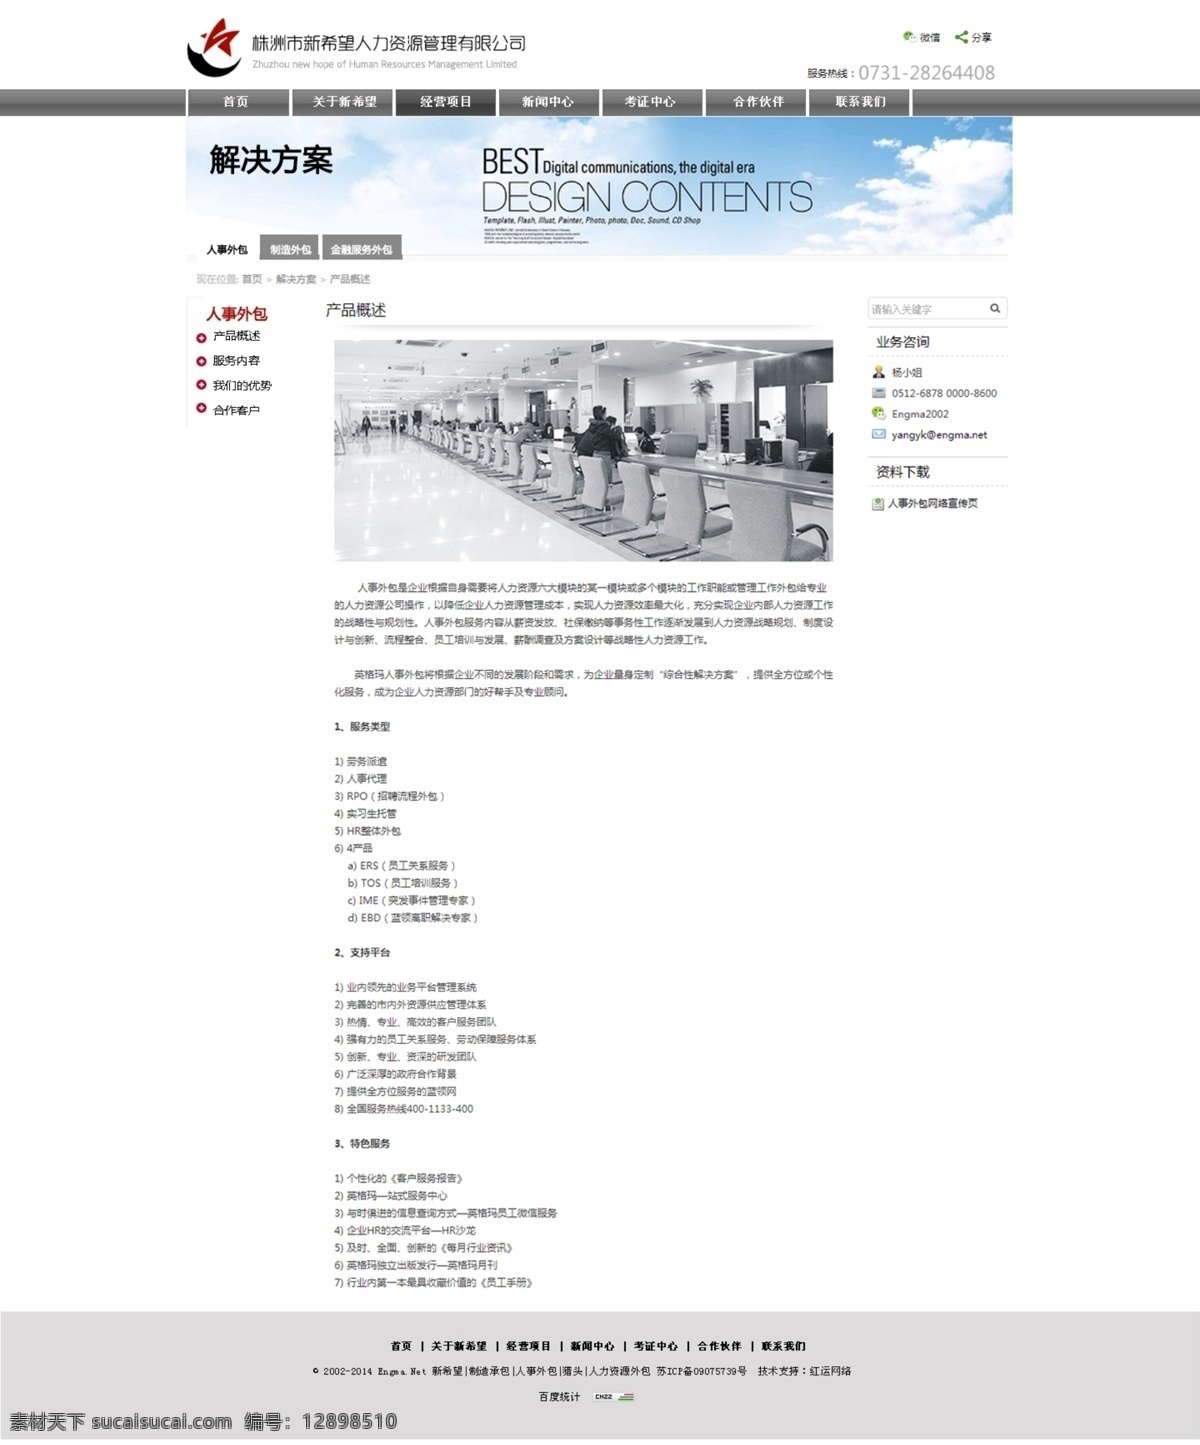 新闻 内页 内页设计 网页设计 网站内页 网站设计 中文模板 新闻内页 web 界面设计 网页素材 其他网页素材